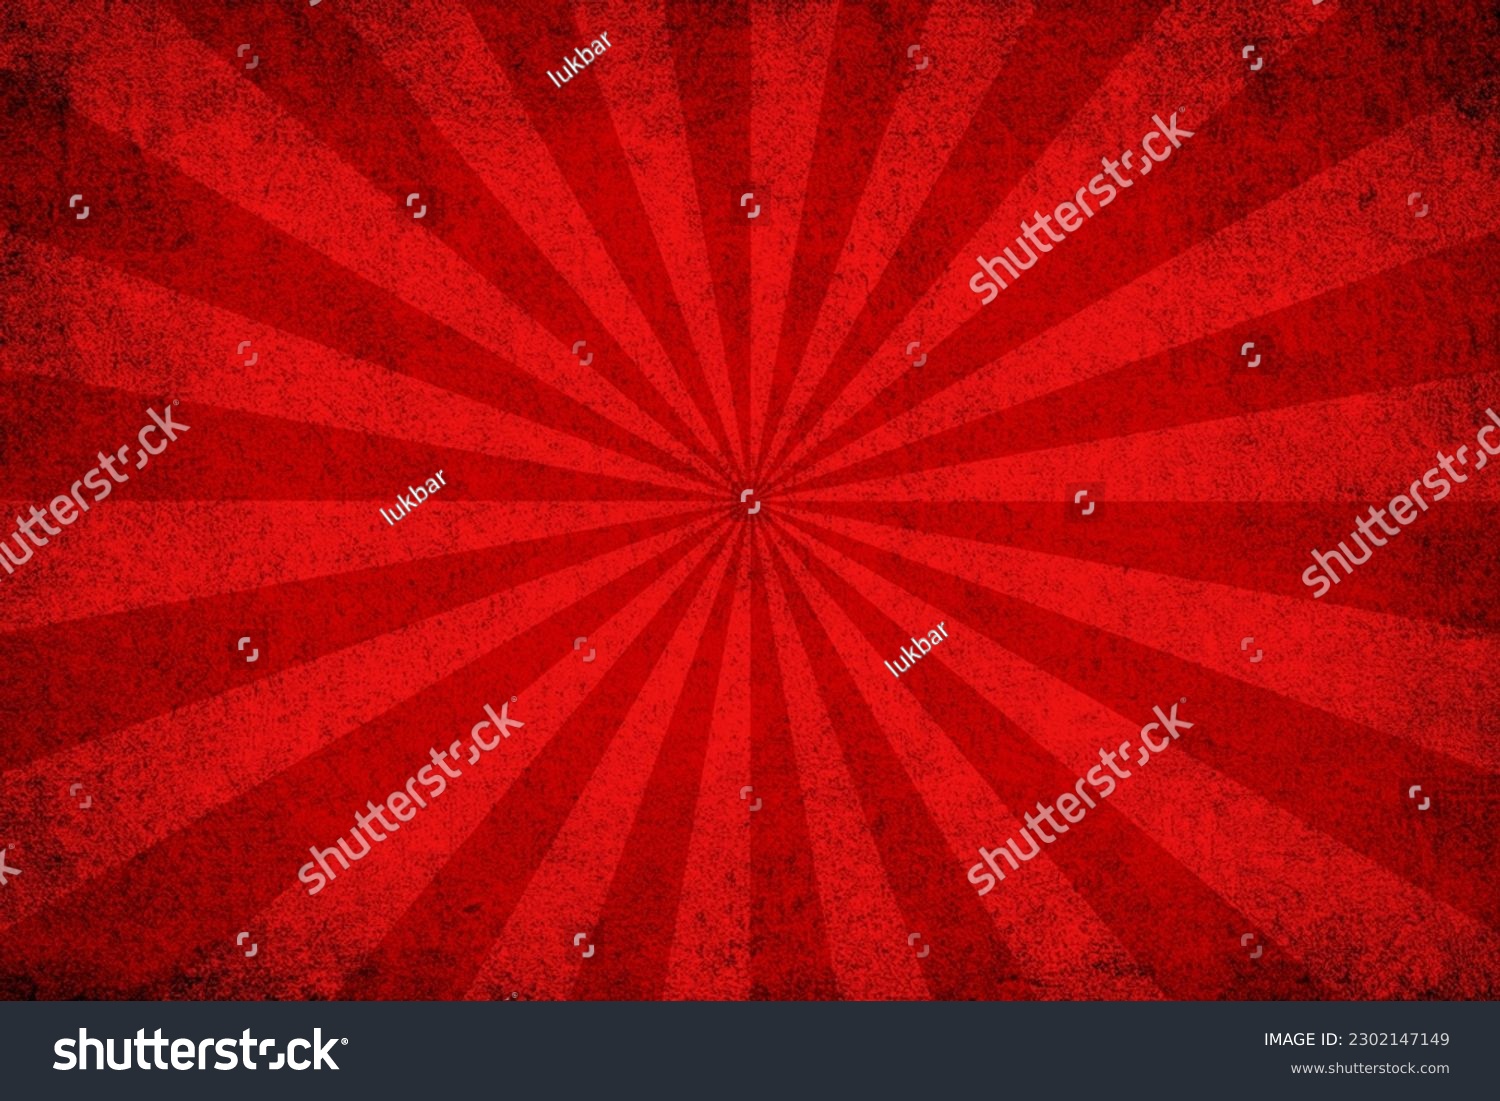 Red grunge background with sunburst  #2302147149